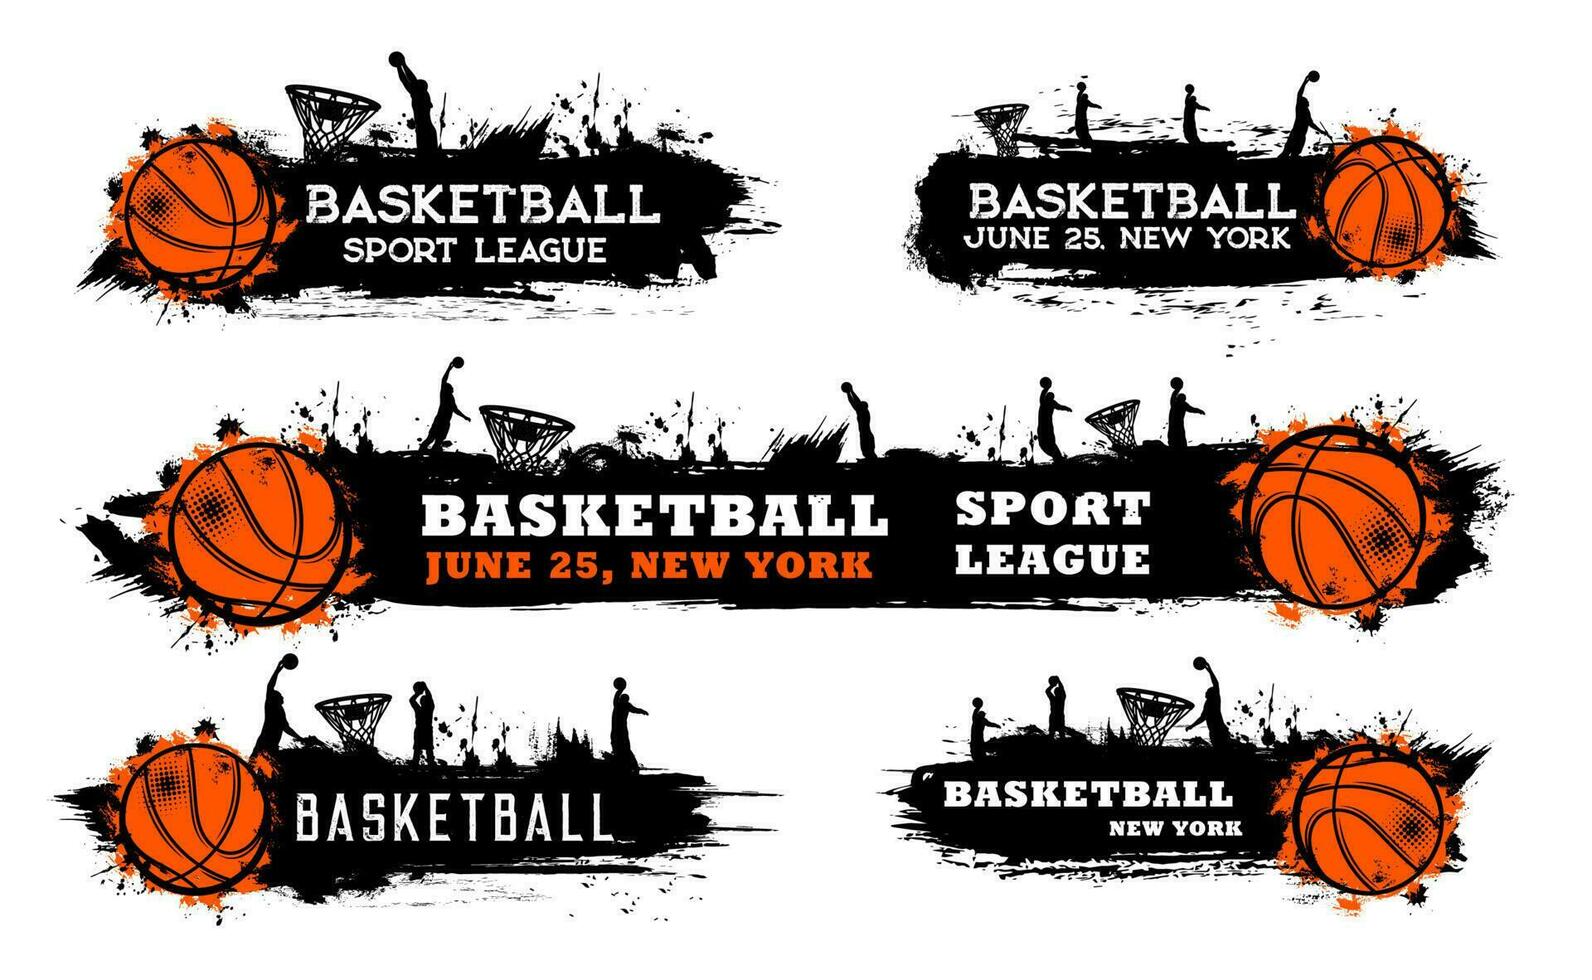 Basketball team match, sport league grungy banner vector